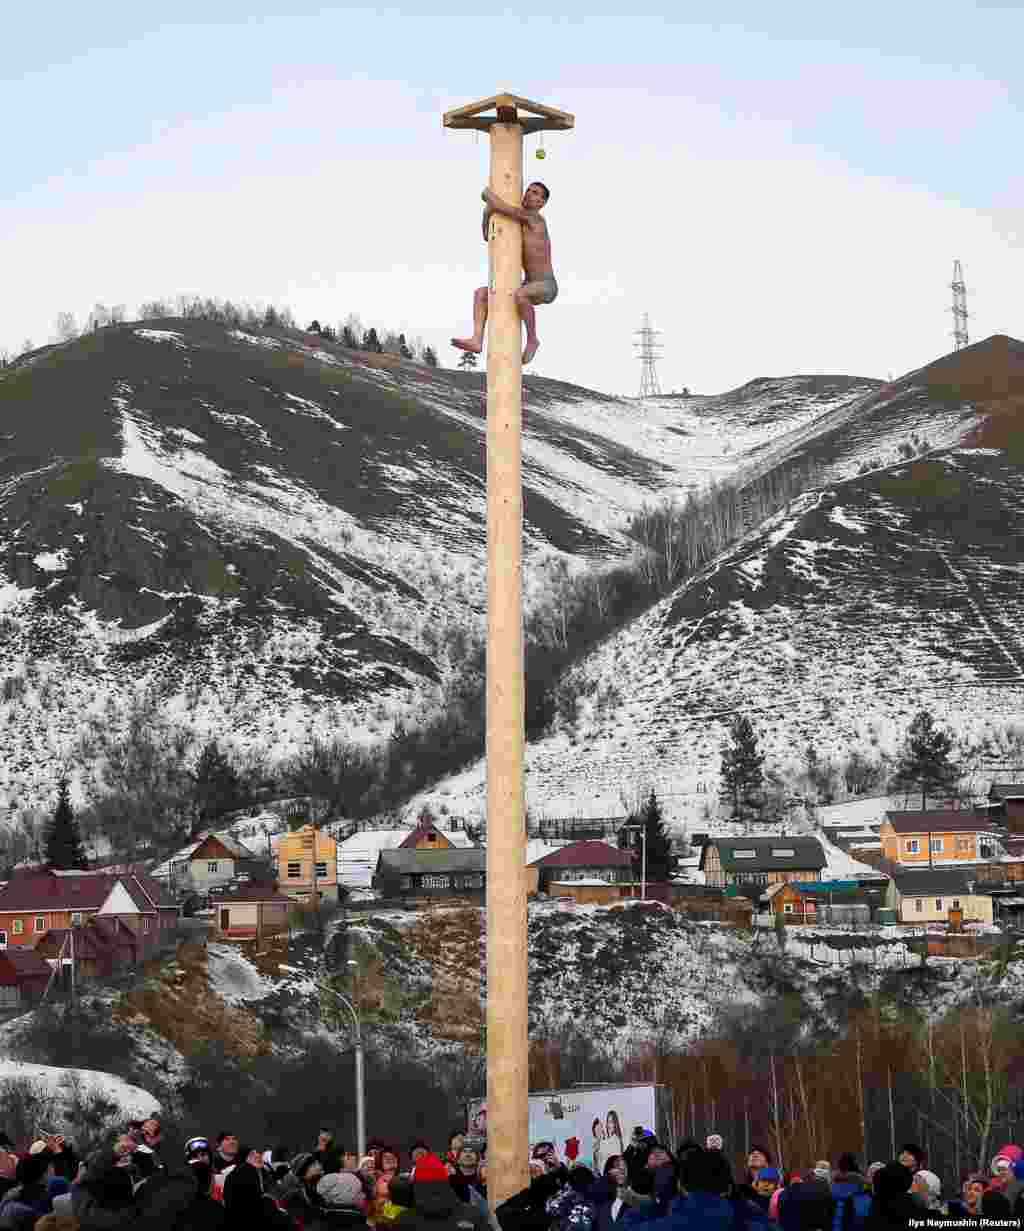 Еще одна традиция &ndash; восхождение на масленичный столб, на вершине которого размещают разнообразные призы и подарки. Человек без посторонней помощи или каких-либо технических устройств должен забраться на холодный ледяной столб. На фото: раздетый мужчина лезет на масленичный столб в Красноярске, 26 февраля.